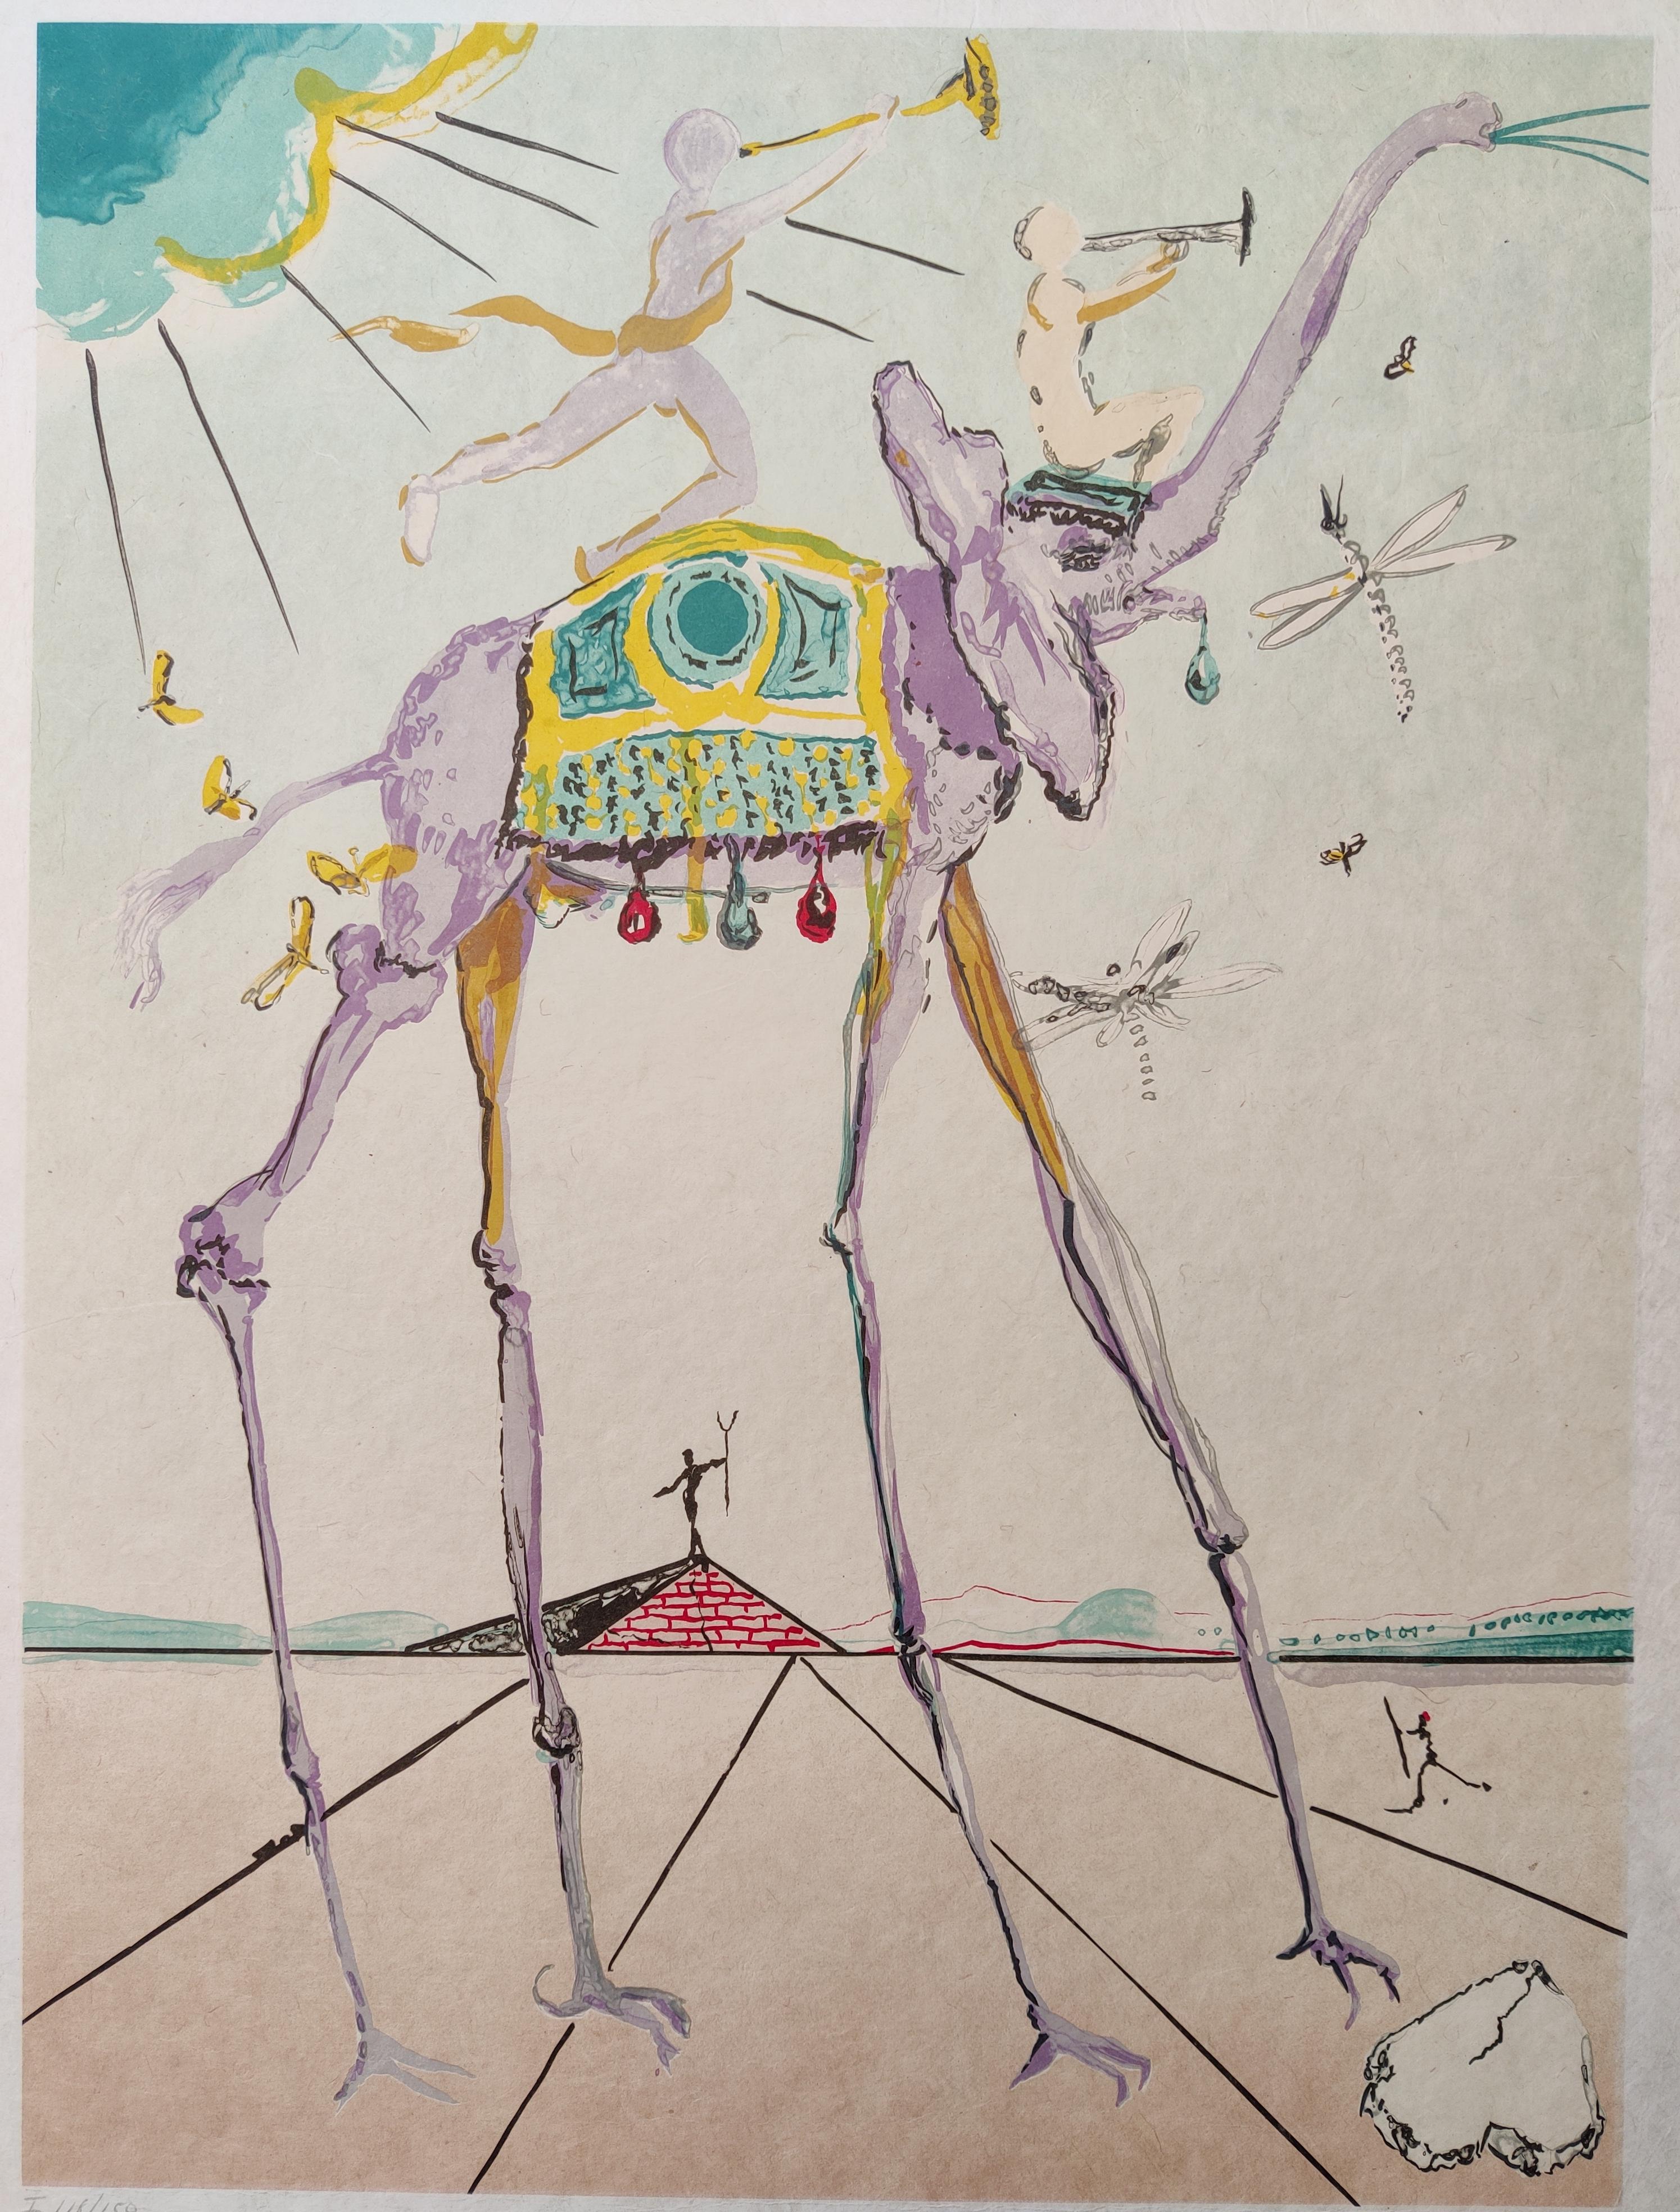 Salvador Dali
Éléphant céleste (éléphant de l'espace), 1979
Lithographie
Signé à la main en bas à droite 
Numéroté I 118/150
Taille de l'image : 58 x 43 cm
Taille de la feuille : 75 x 55 cm

Champ 79-5